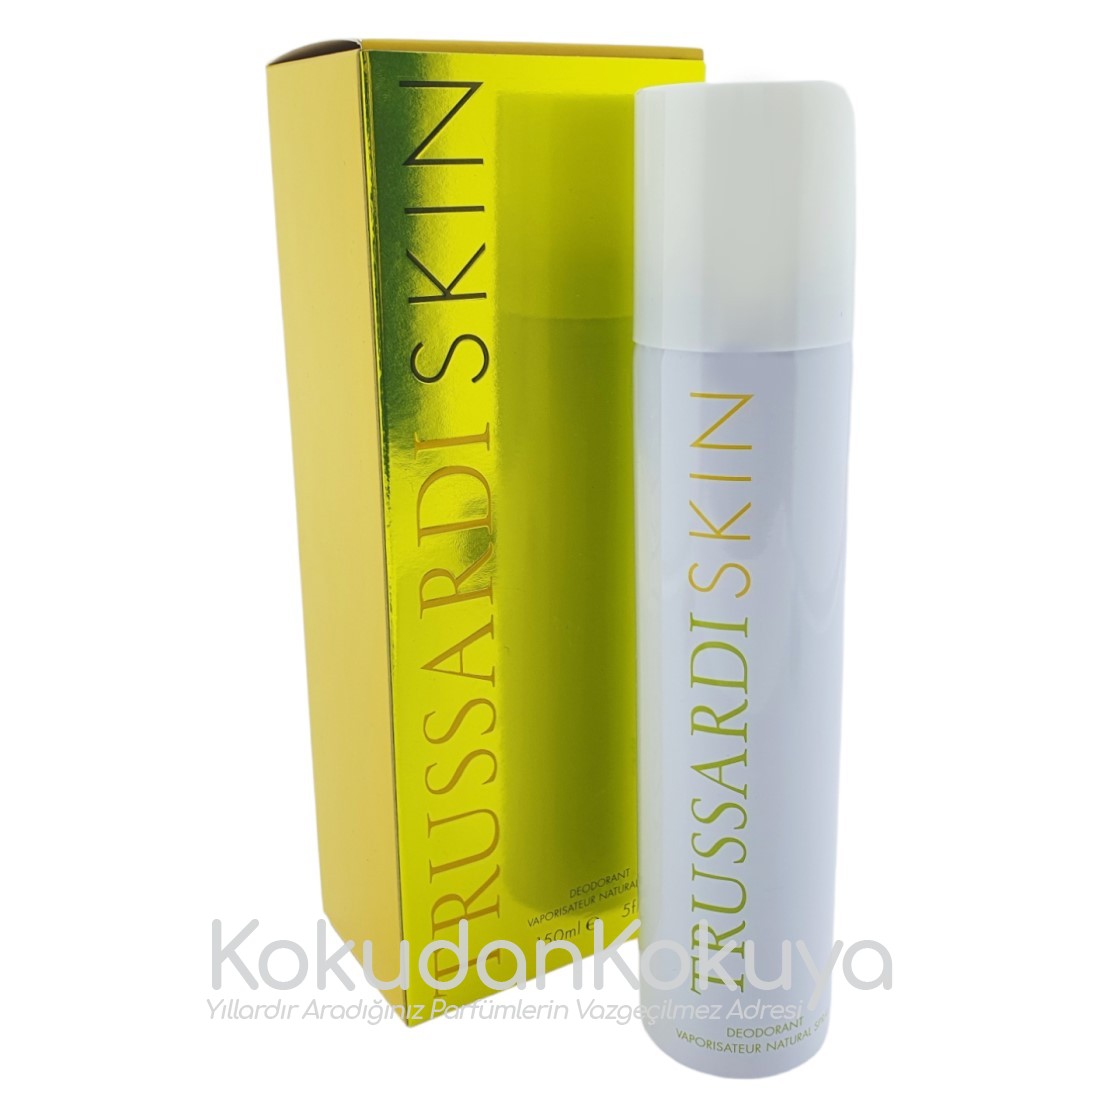 TRUSSARDI Skin (Vintage) Deodorant Kadın 150ml Deodorant Spray (Metal) Sprey 